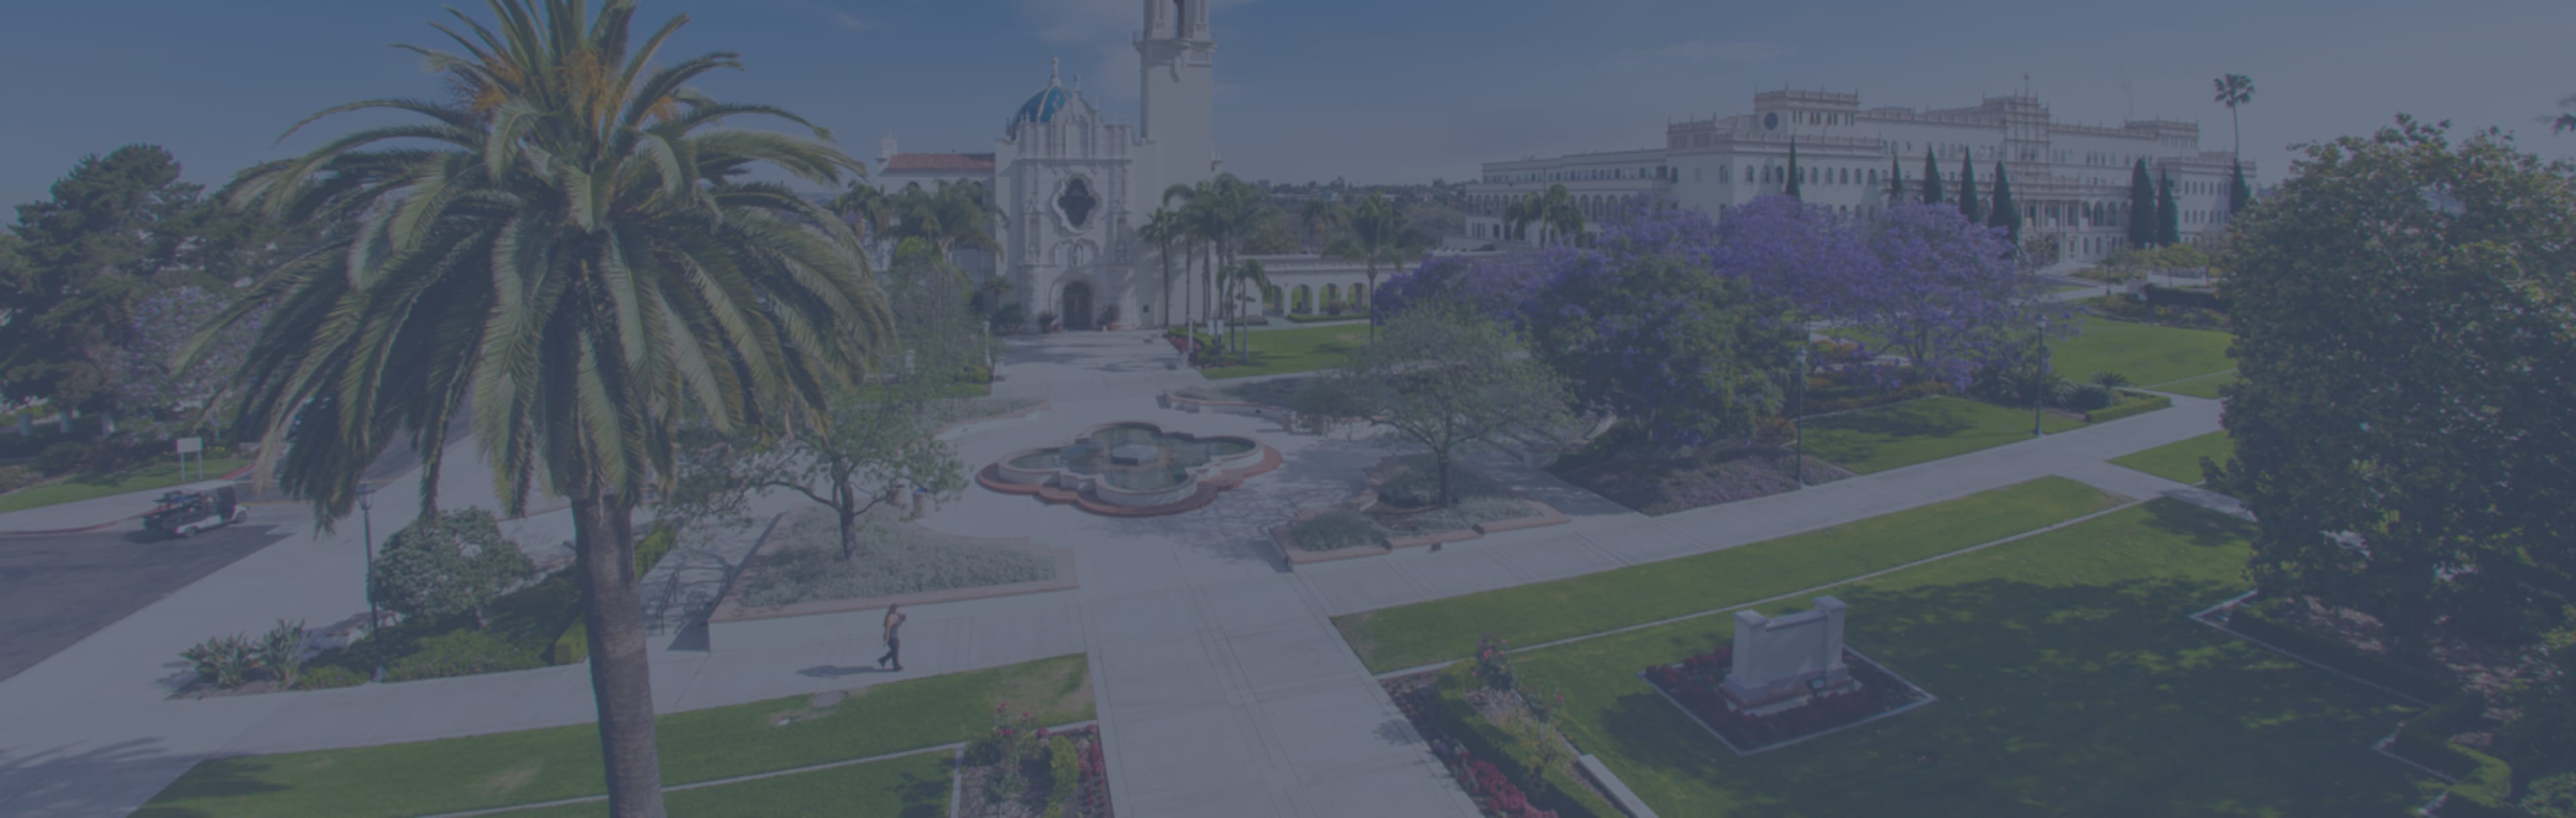 University of San Diego School of Law 課税のLLM